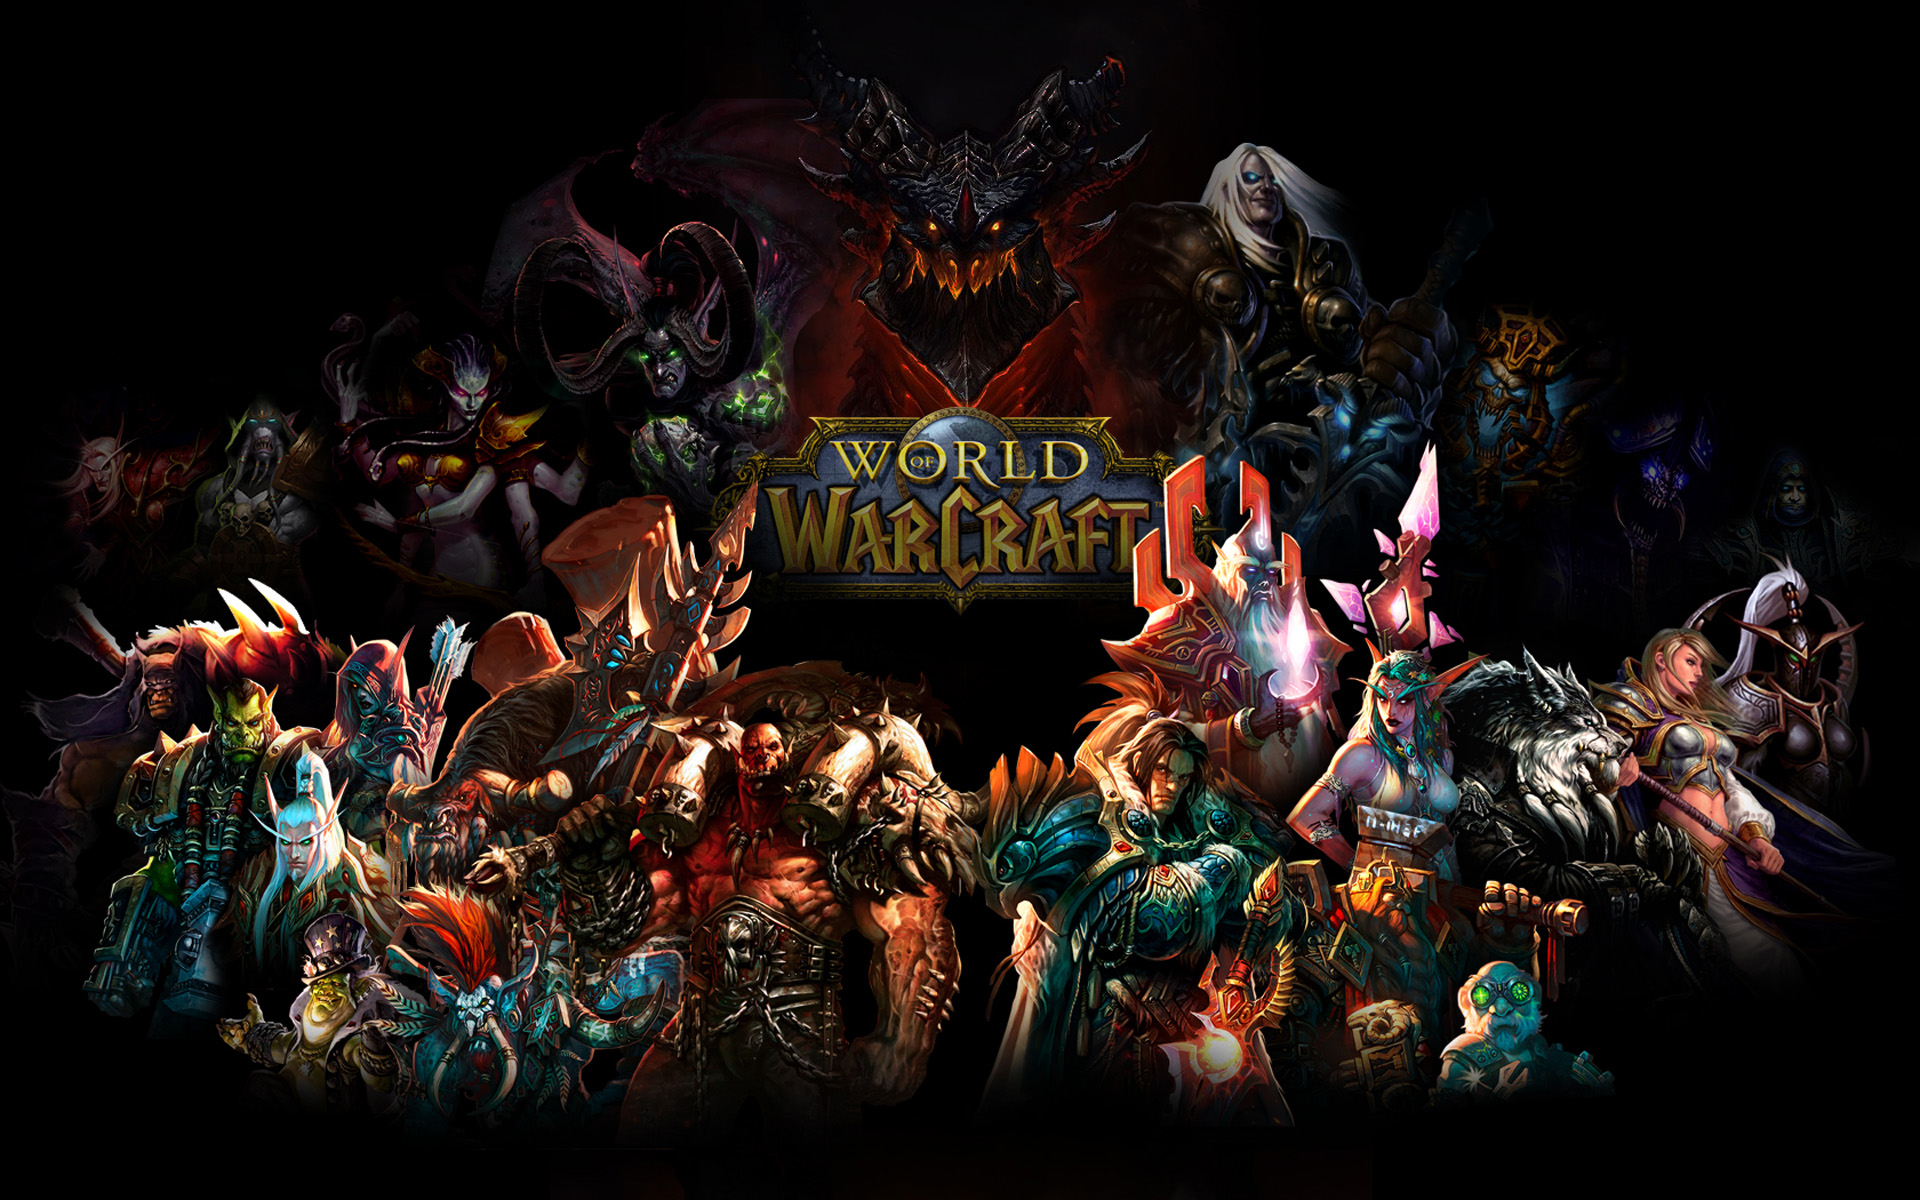 Kaelthas Sunstrider Akama World Of Warcraft Lady Vashj Illidan Stormrage Deathwing World Of Warcraft 1920x1200